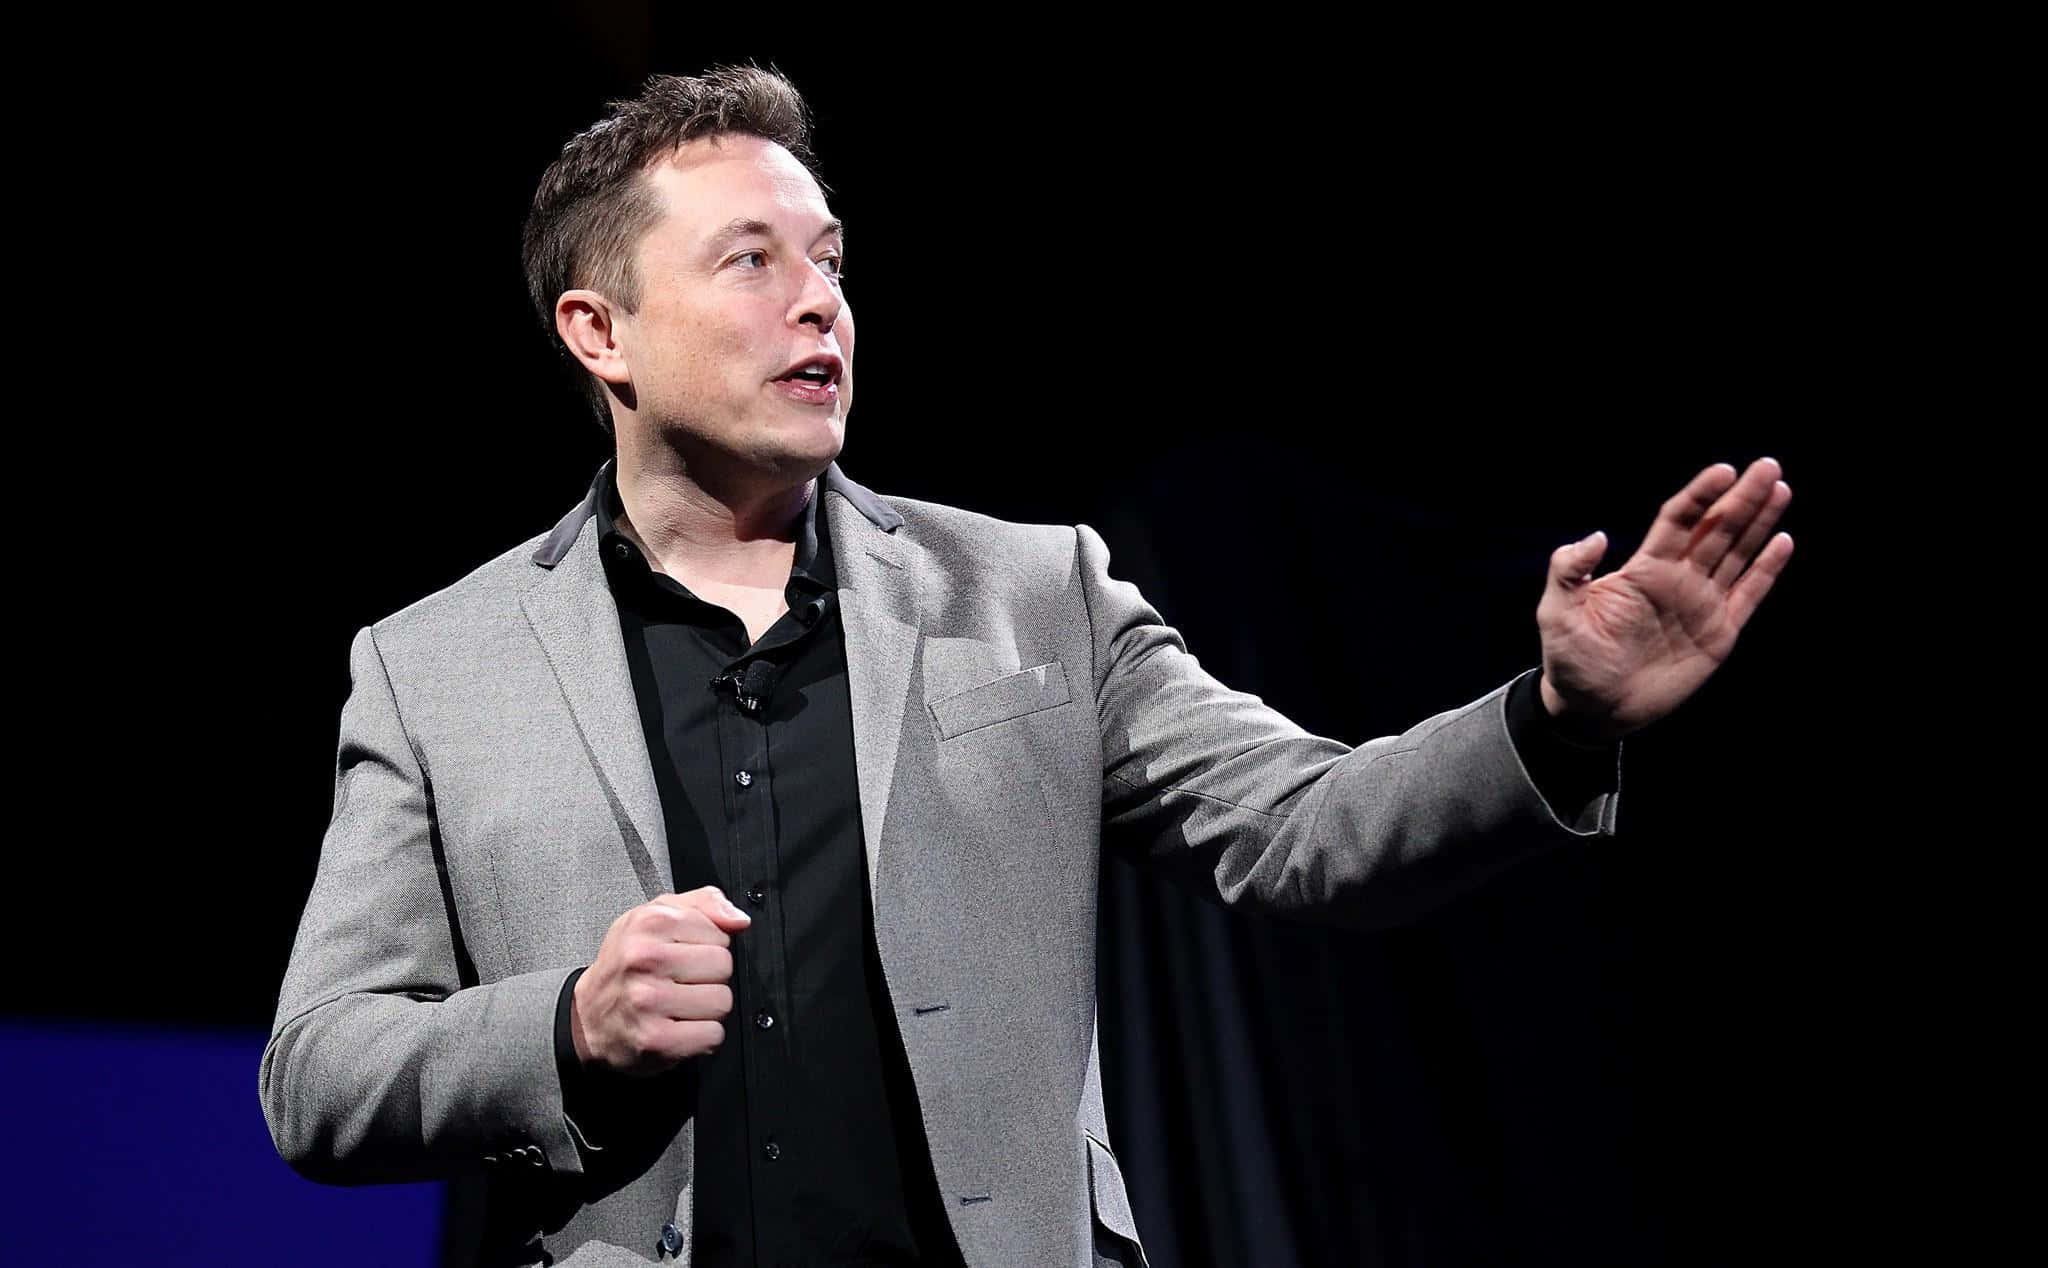 Technologieinnovatorund Unternehmer, Elon Musk.